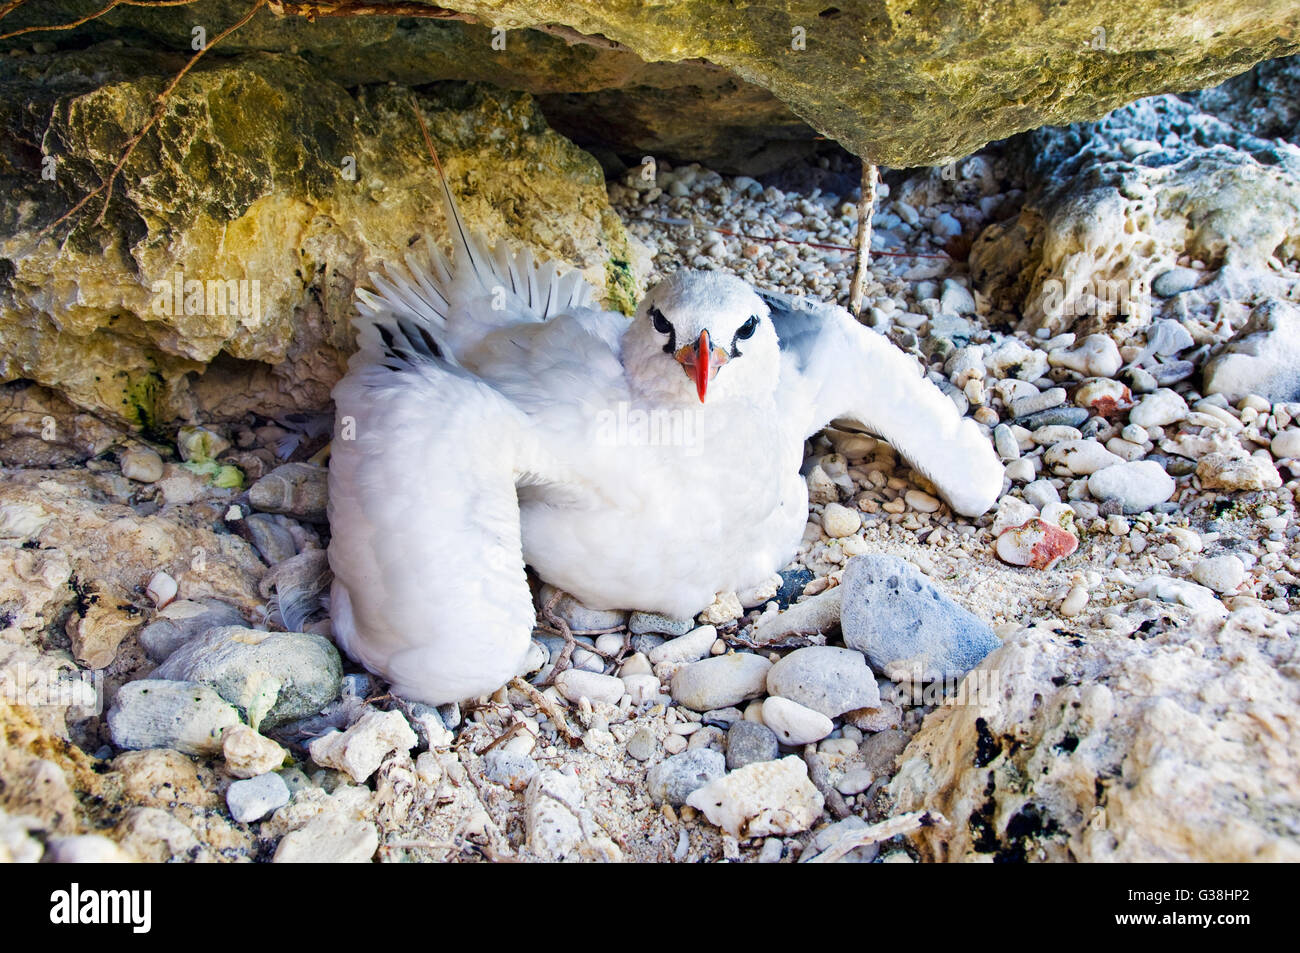 Argent pour mineurs d'équipage ou rouge-queue, Phaethon rubricauda dans son nid sur l'île de Noël, de l'Australie Banque D'Images